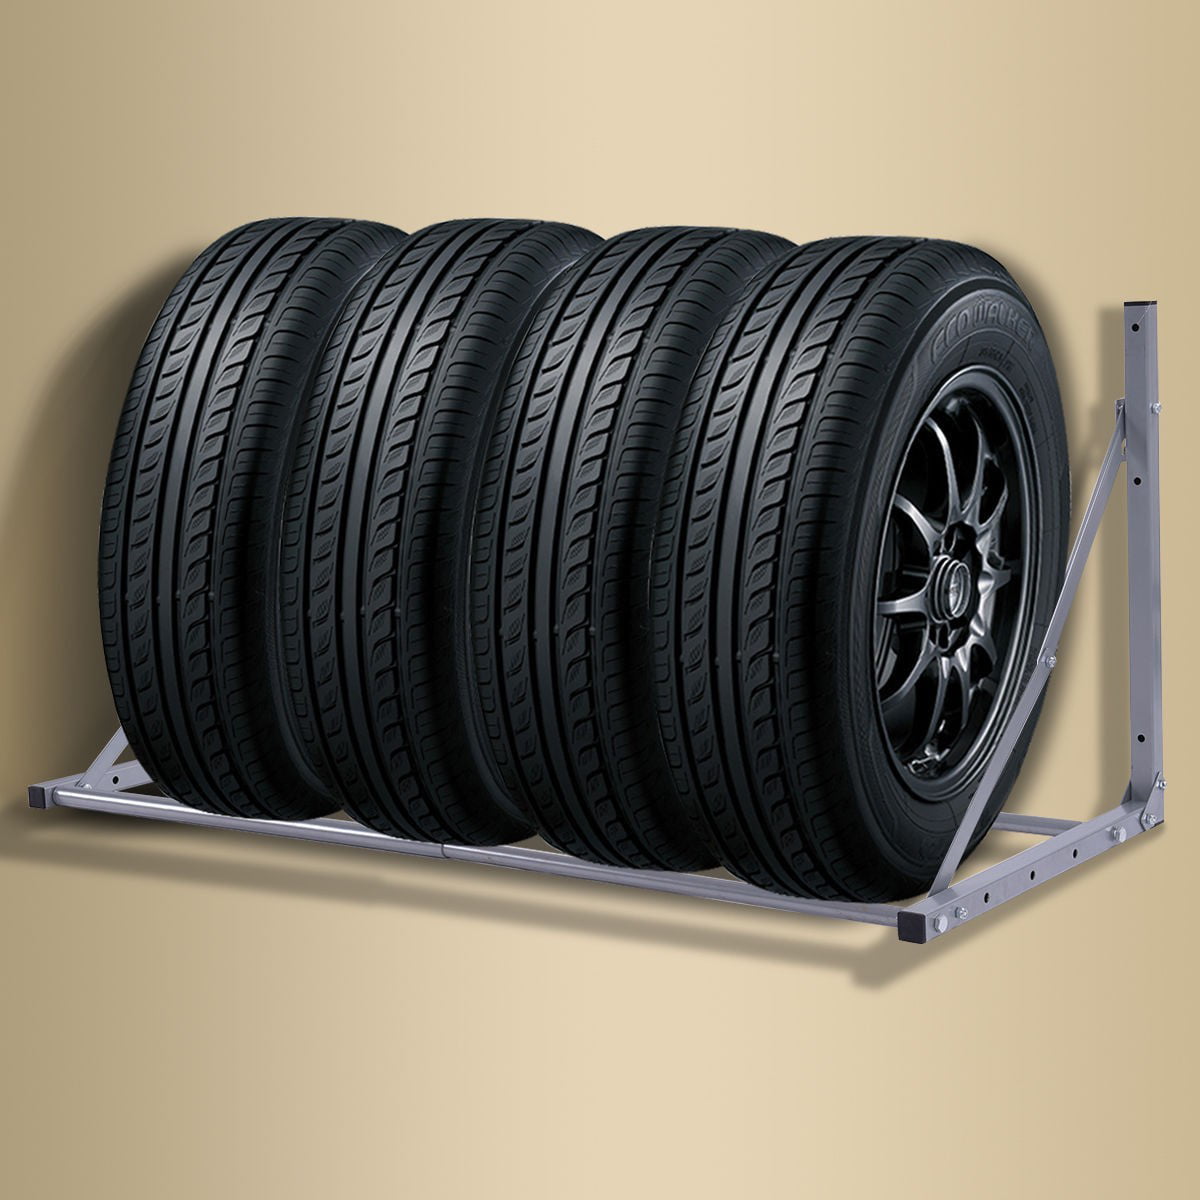 Folding Tire Wheel Rack Storage Holder Heavy Duty Garage Wall Mount